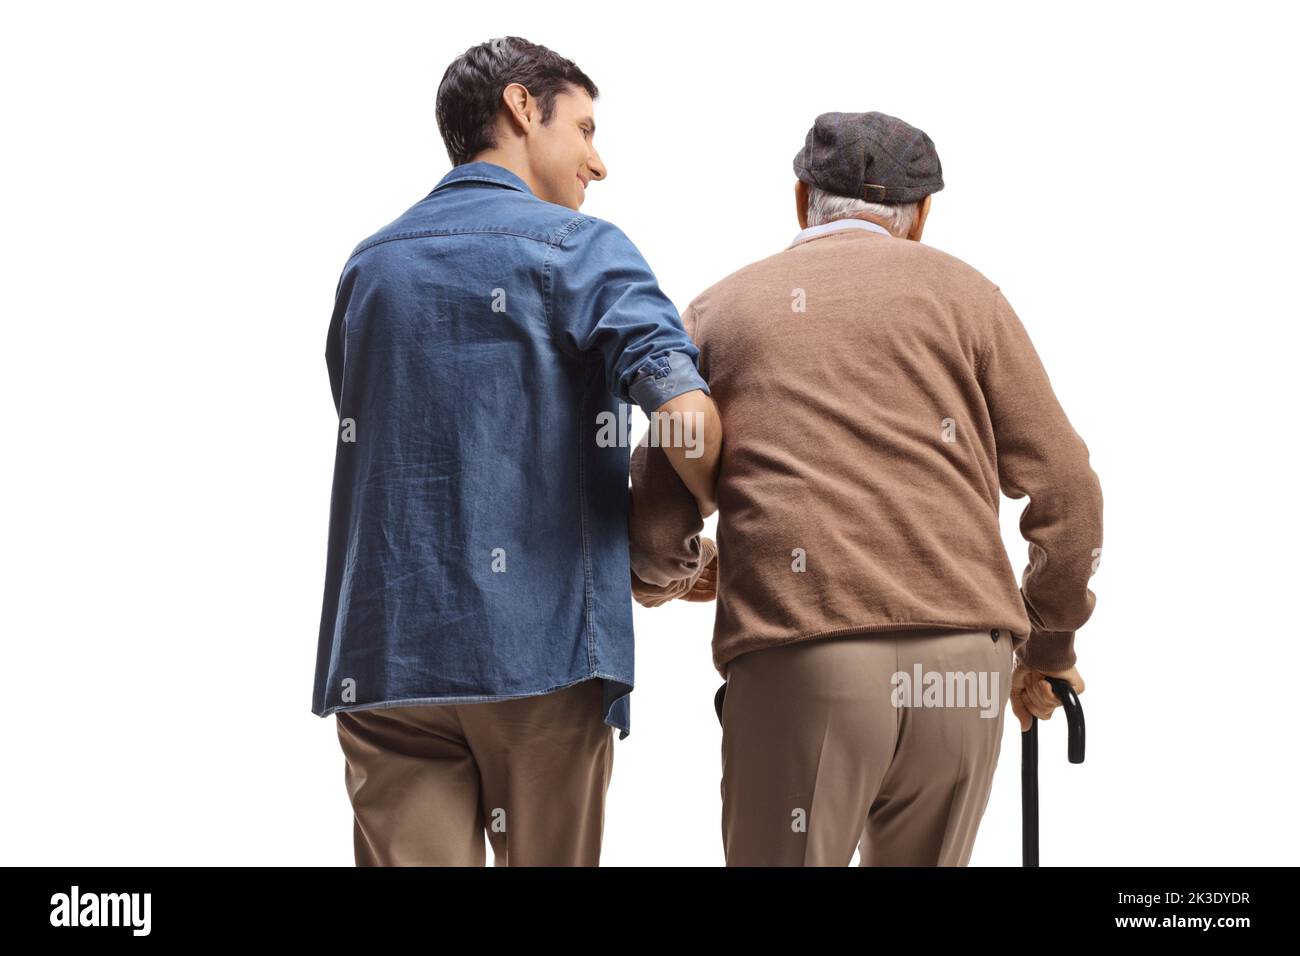 Immagine posteriore di un giovane che aiuta un uomo anziano con una canna da camminata isolata su sfondo bianco Foto Stock